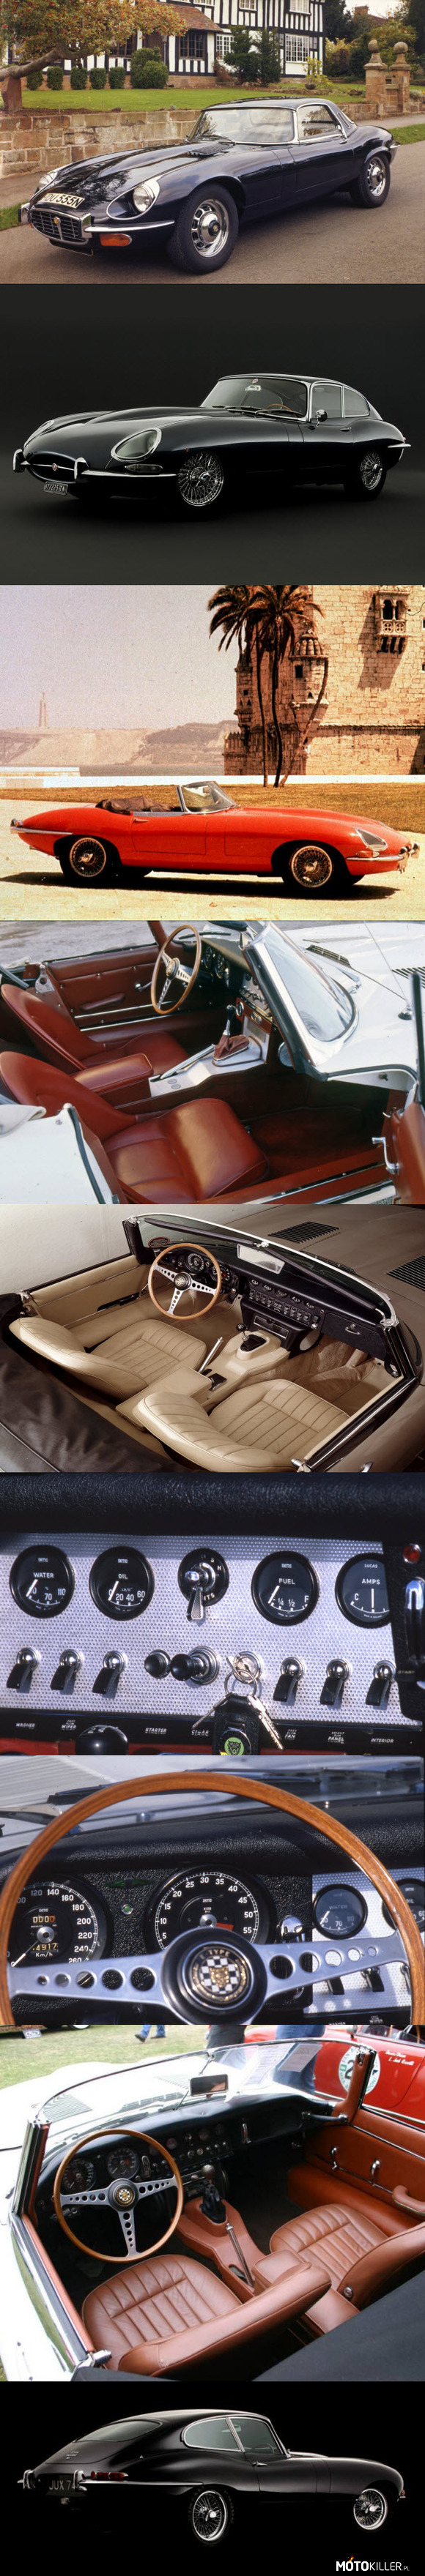 Jaguar E-Type - Charseria samochodów wyjątkowych – Zaraz po wojnie w Bedford otwarto pierwszy tunel aerodynamiczny. Ma to bezpośredni związek z naszym Jaguarem. Jaki? Czytaj!

Auto było projektowane nocą. William Lyons (ówczesny szef Jaguara) był bardzo sceptycznie nastawiony do tego projektu. Zatem projektowano go po godzinach. William Lyons uważał, że trzeba modernizować XK 120, a nie pchać się w nowe projekty. Projektanci i inżynierowie nie posłuchali go jednak. Po zbudowaniu nadwozia przewieziono go do Bedford, gdzie miano zamiar sprawdzić go w tunelu aerodynamicznym, by dopracować szczegóły. No i na chęciach się skończyło. Gdy zaczęto osiągać większe prędkości tunel zaczął pobierać tak duże ilości energii, że odłączył od zasilania całe Bedford. I z tym sobie poradzono. Jak? Ano uruchamiano tunel nocą. Gdy w Kociaku zawitał 12 cylindrowy silnik - trzeba było go sprawdzić. Ówczesne auta osiągały przeciętnie 110 - 130 km/h. To był ich kres. Jag jechał o 100 km/h szybciej. Tory wówczas to były opuszczone lotniska. Zbyt krótkie jak się okazało, by poznać możliwości samochodu. Ale przecież jest nowo wybudowana M1. Za dnia ruch był spory, ale nocą... To było jak bawienie się granatem z wyciągniętą zawleczką. Pamiętajmy, że nie było wtedy nawet pasów bezpieczeństwa, a jedynym zabezpieczeniem kierowcy była wiara, ze w razie wypadku nie odleci zanadto od samochodu i że będzie z niego co zbierać... Lecz testowano Jaga nocą w tajemnicy przed Wiliamem. Tak oto nocą narodził się E-type. Taki nocny kot.

Gdy auto ujrzał William Lyons - uznał go za największą porażkę firmy. Nie podobała mu się niska sylwetka i niesamowicie długi przód. Uważał auto za pokraczne. Jednak z braku innego modelu auto wystawiono w salonie samochodowym w Genewie... Z drżącym sercem, bo do tej pory William Lyons zawsze miał rację.

Tymczasem życie pokazało oś zupełnie innego. W Genewie auto odniosło gigantyczny sukces. Zostało uznane za najładniejszy samochód świata, kosztowało trzykrotnie mniej, niż Ferrari, a chętnych na jazdę próbną było tylu, że z fabryki musiano sprowadzić drugie auto (w wersji Cabrio). Sam Enzo Ferrari uznał je za najpiękniejszy samochód jaki kiedykolwiek wyprodukowano i był posiadaczem 3 modeli E-Type. Zresztą kto kojarzy Ferrari Daytona, ten od razu będzie widział, jakie auto było inspiracją przy projektowaniu owego Ferrari. Do dziś Jag budzi podziw, szacunek i zachwyca pięknem... Zgodnie z dewizą - piękno jest ponadczasowe.

Poniżej dane techniczne najmocniejszego kocurka (co najciekawsze, nie był najszybszy, bo waga silnika robiła swoje, silnik sześciocylindrowy o pojemności 4235 ccm i mocy 269 koni osiągał prędkość 246 km/h):

Silnik: V12 5,4 l (5344 ccm), SOHC
Układ zasilania: cztery gaźniki
Moc maksymalna: 276 KM (203 kW) przy 5850 obr/min
Maks. moment obrotowy: 412 N•m przy 3600 obr/min
0-100 km/h: 6,4 s
V-max: 235 km/h

Samochód zajął pierwsze miejsce w rankingu The Daily Telegraph stu najpiękniejszych samochodów wszech czasów.

Pozostałe samochody opisywane w serii Tutaj 